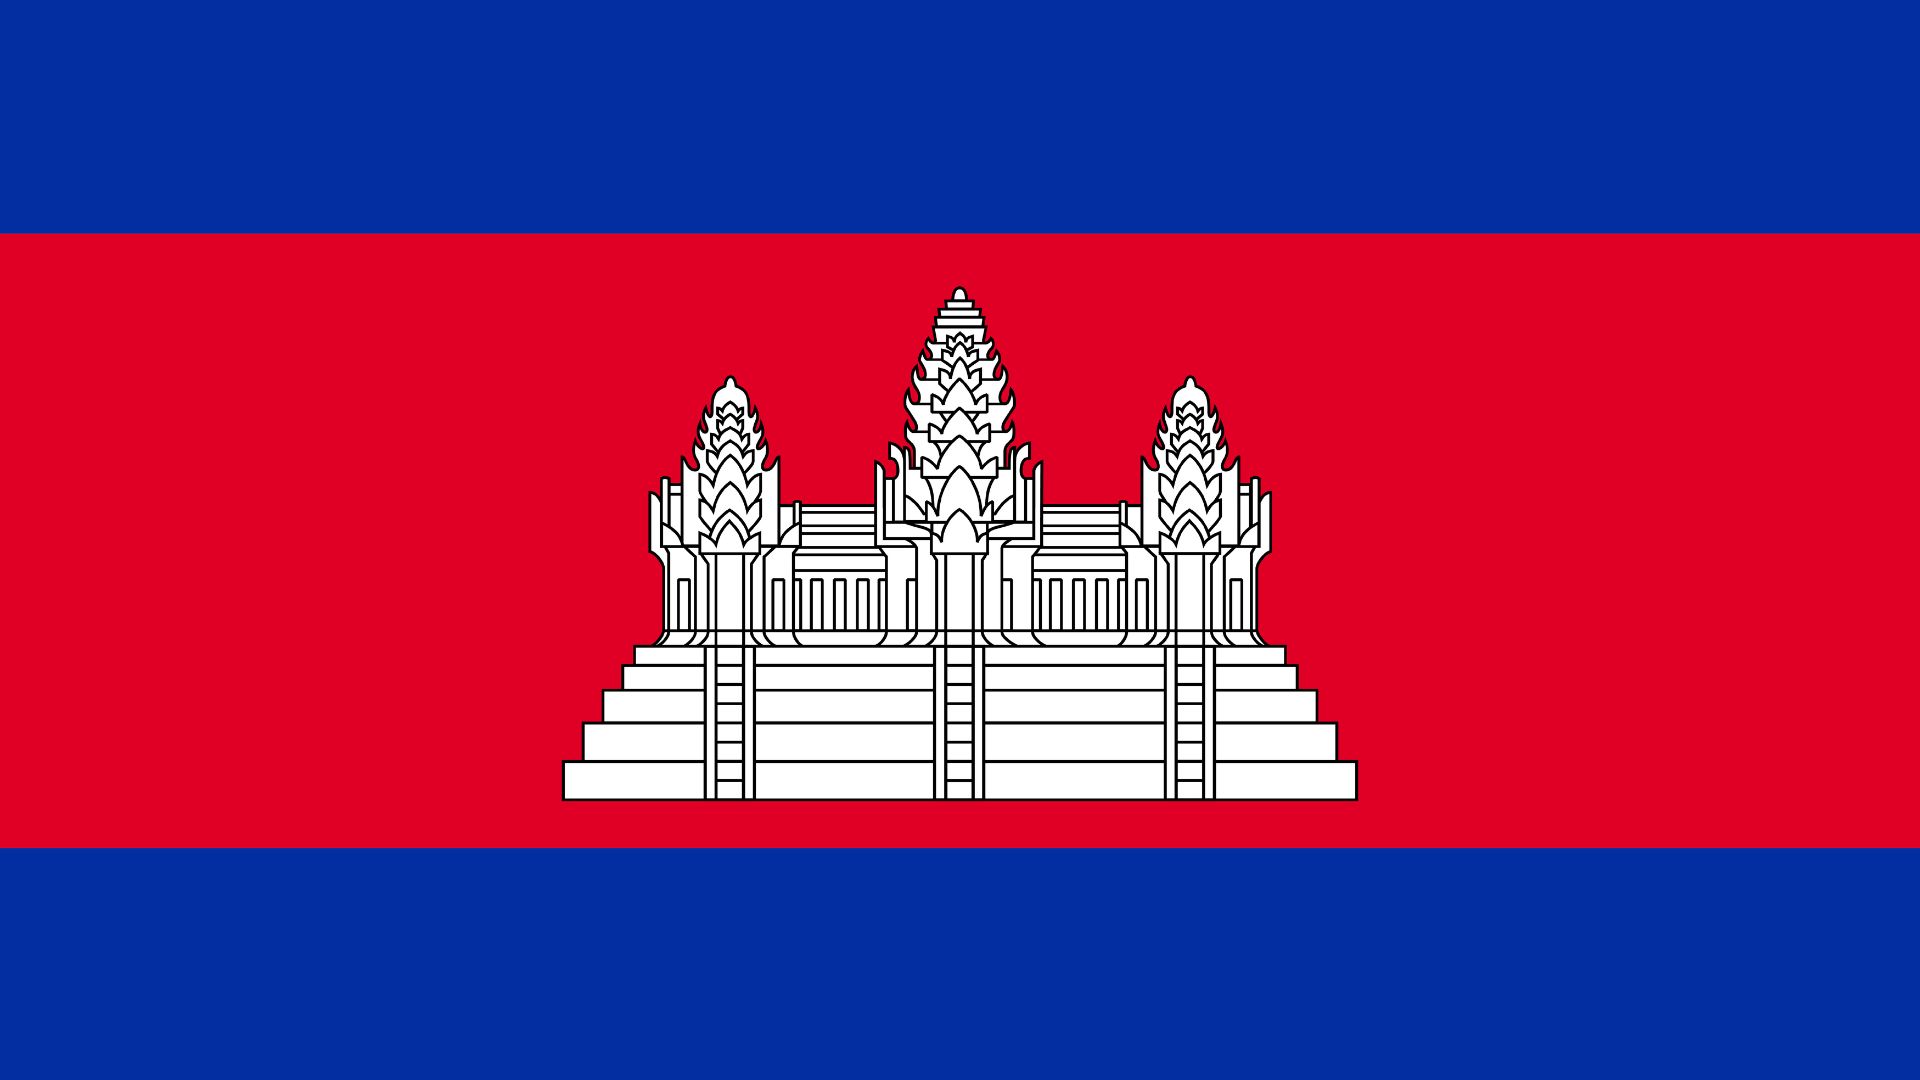 A bandeira do Camboja possui três listras horizontais, tendo a central (de cor vermelha) o dobro da largura das outras duas faixas (de cor azul). No meio da faixa vermelha está representada a entrada do templo de Angkor Wat.